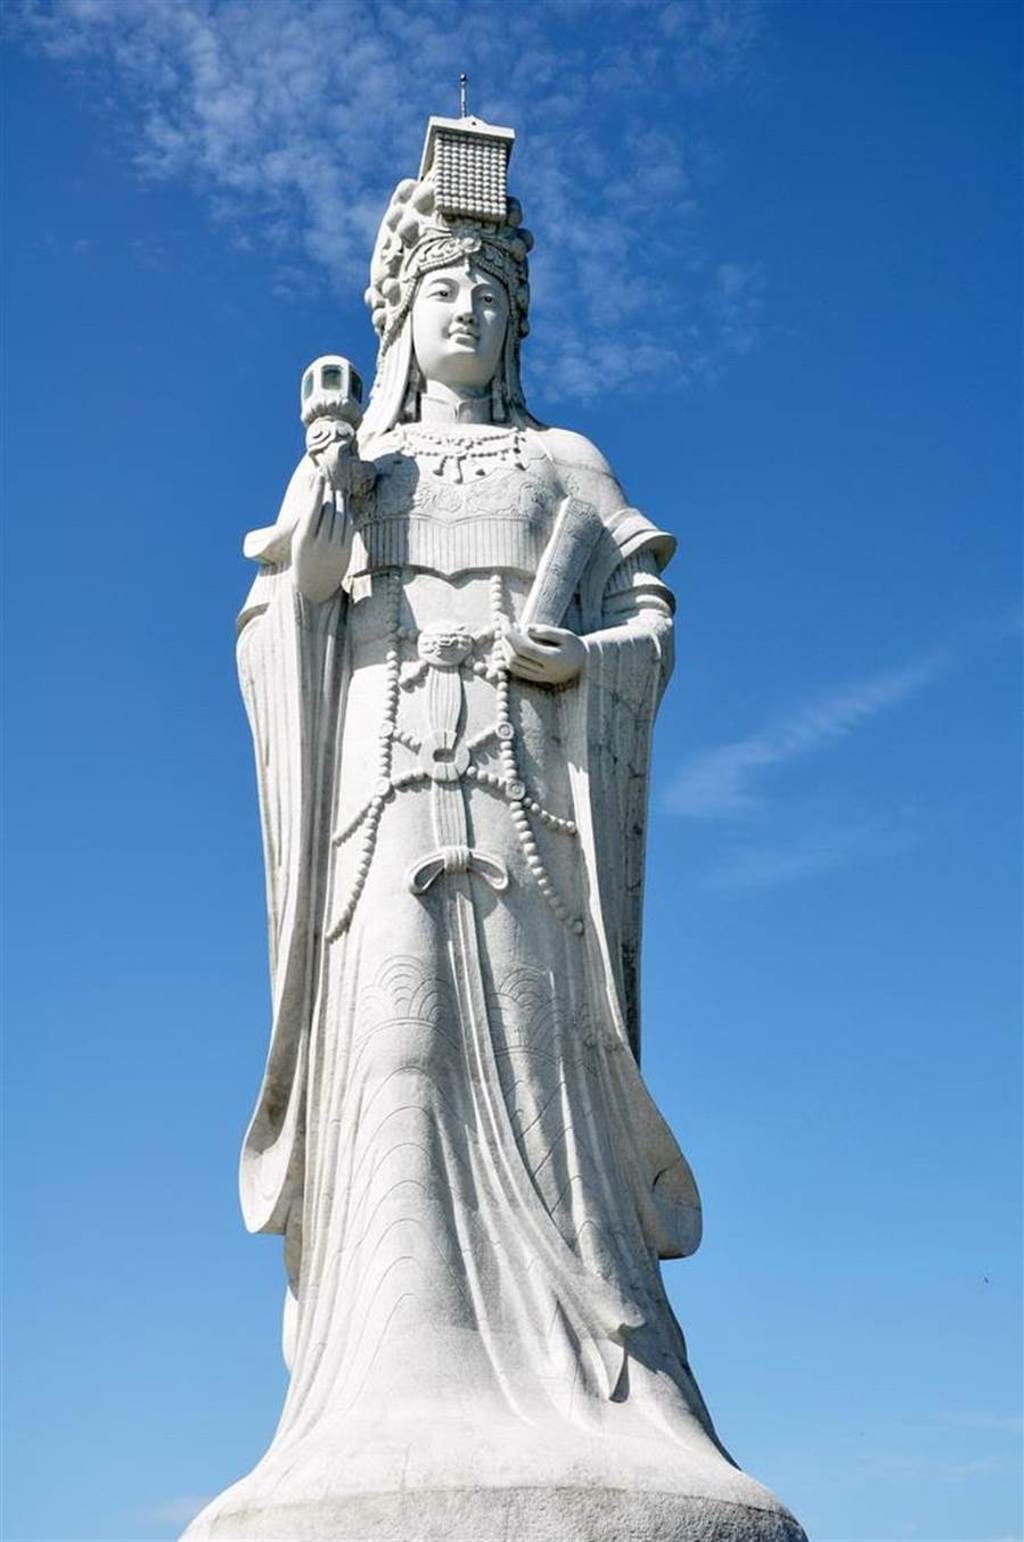 馬祖南竿媽祖巨神像。(圖/五福提供)